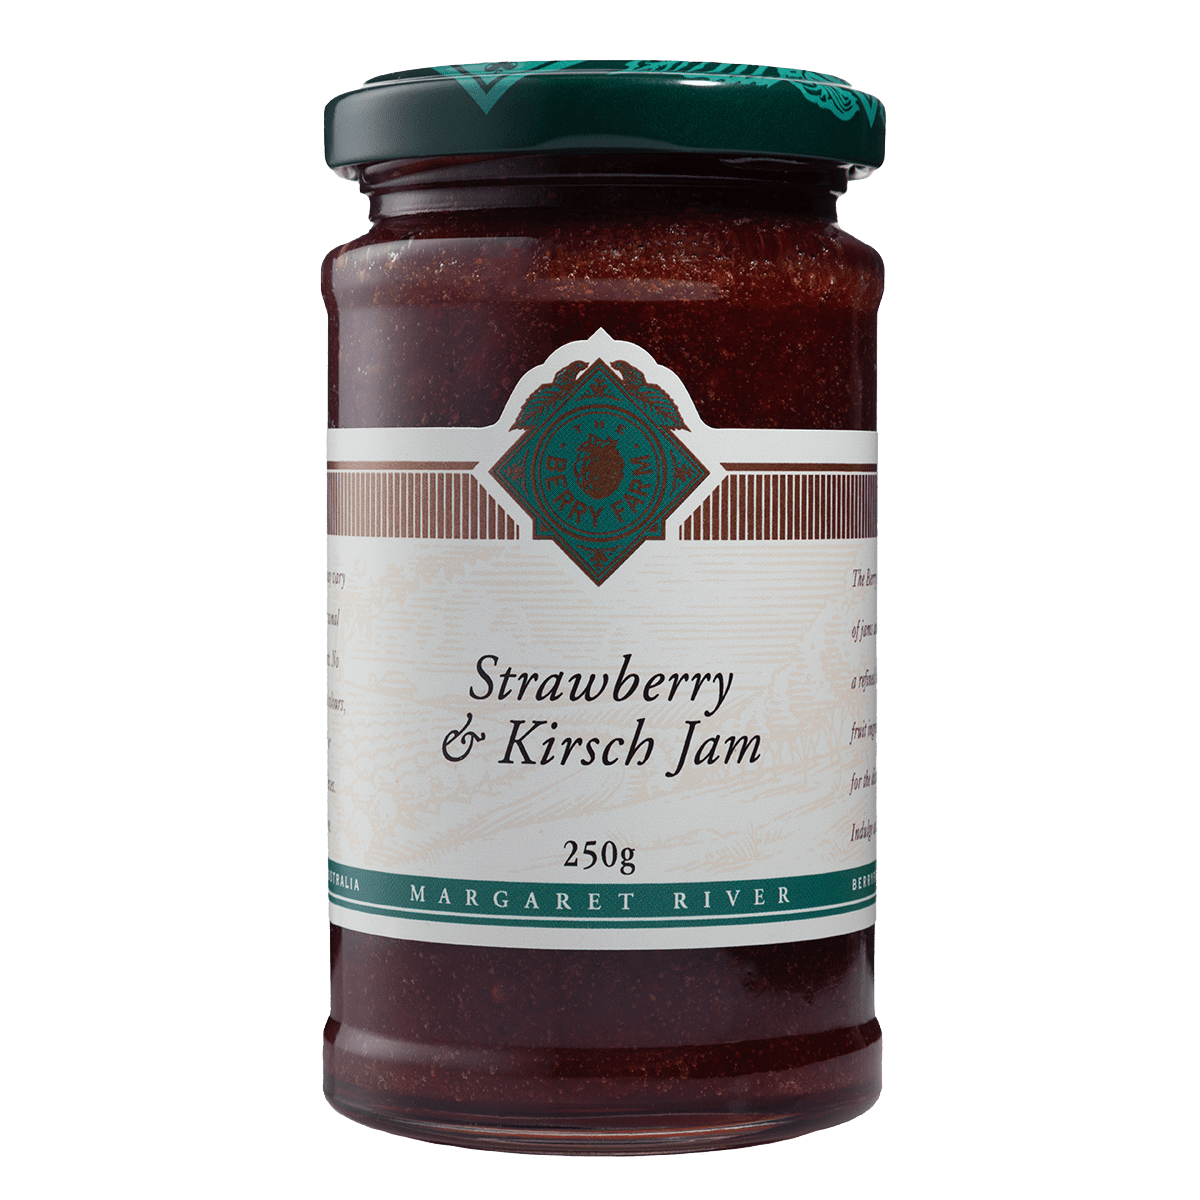 A jar of Strawberry & Kirsch Jam